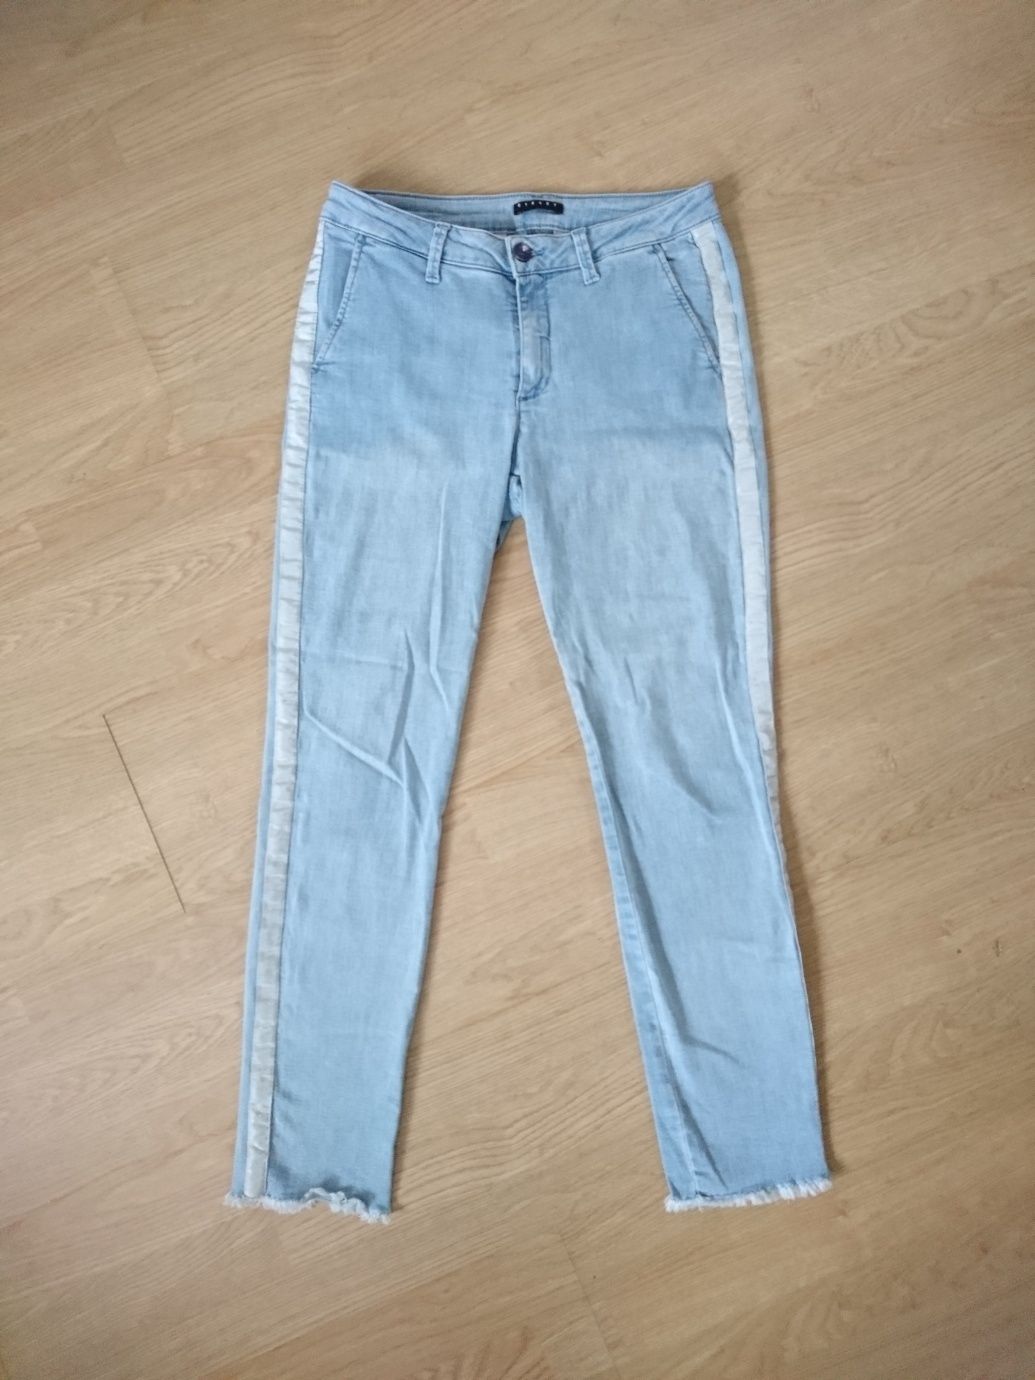 Jasnoniebieskie błękitne spodnie jeansy z białym paskiem sisley proste